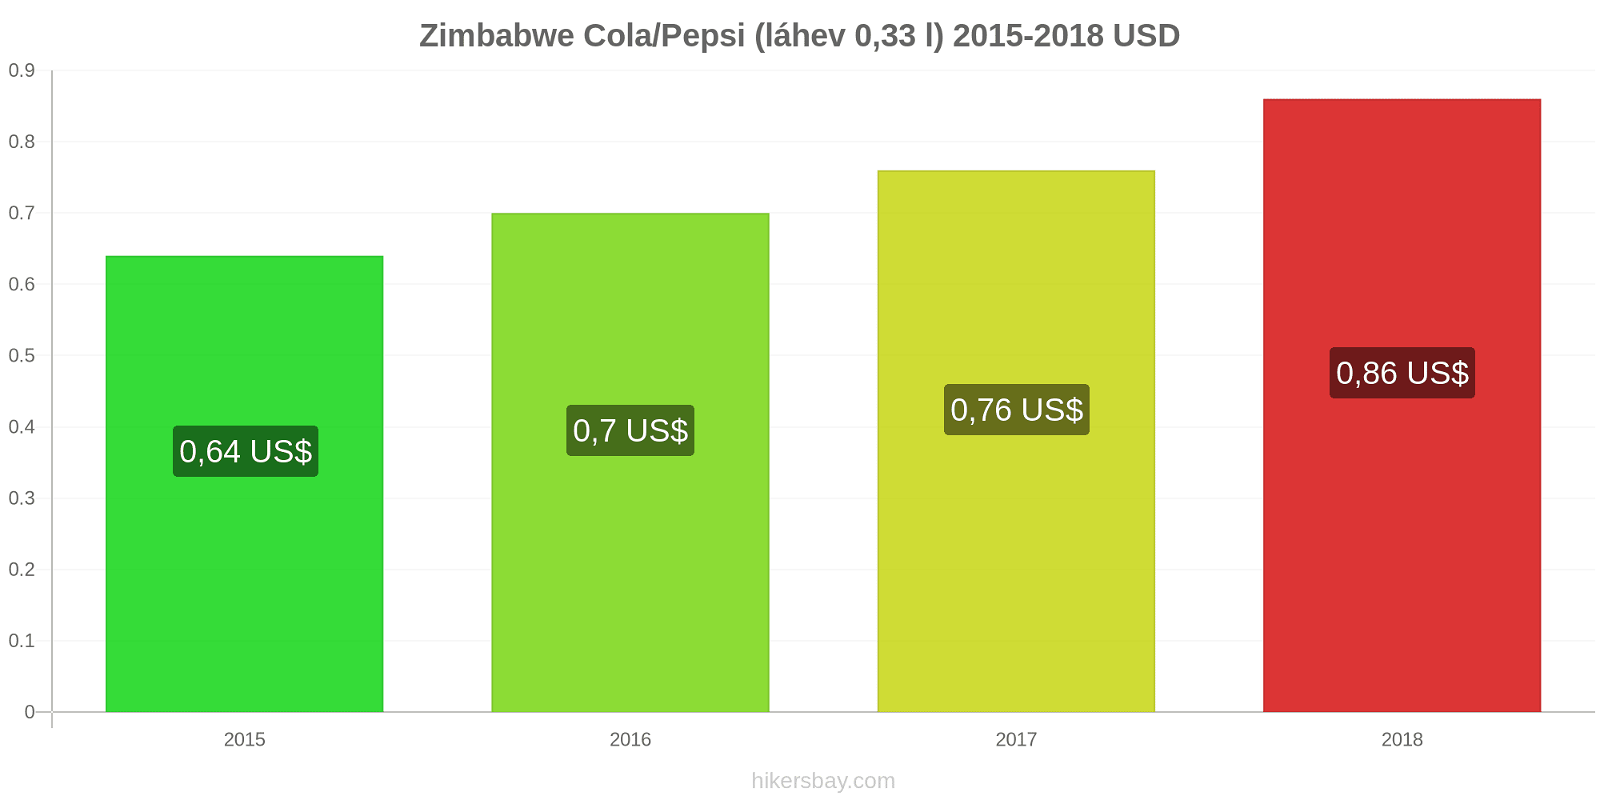 Zimbabwe změny cen Coca-Cola/Pepsi (láhev 0.33 l) hikersbay.com